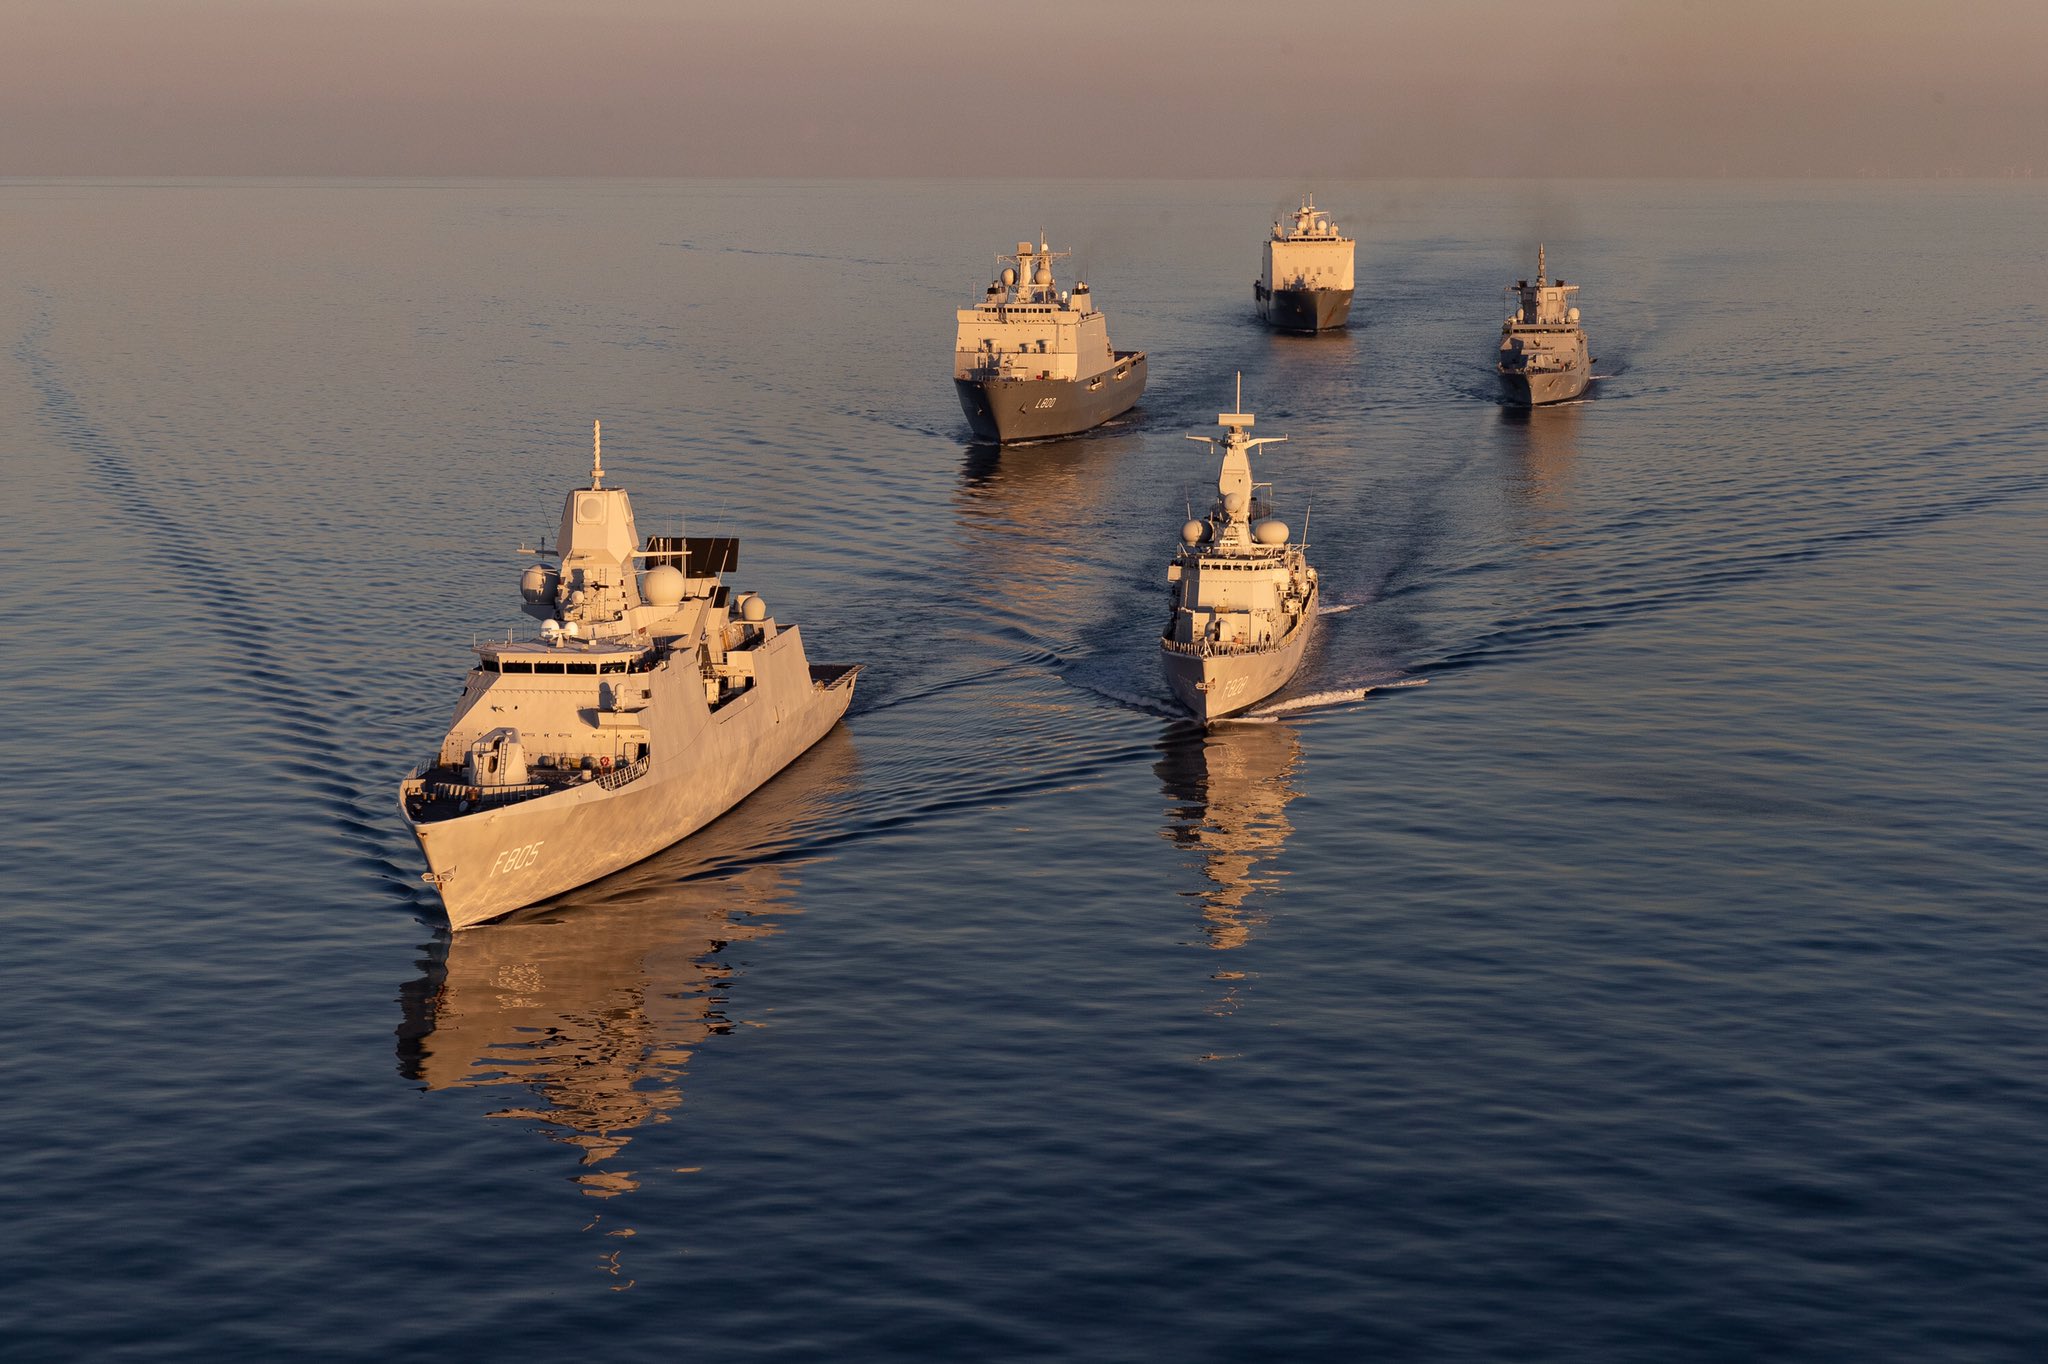 Koninklijke Marine on Twitter: "Een eskader van 4 marineschepen trainde de afgelopen weken met buitenlandse eenheden op de Noordzee en Denemarken. Schieten op varende en vliegende drones, navigatieoefeningen,luchtverdediging met F35s